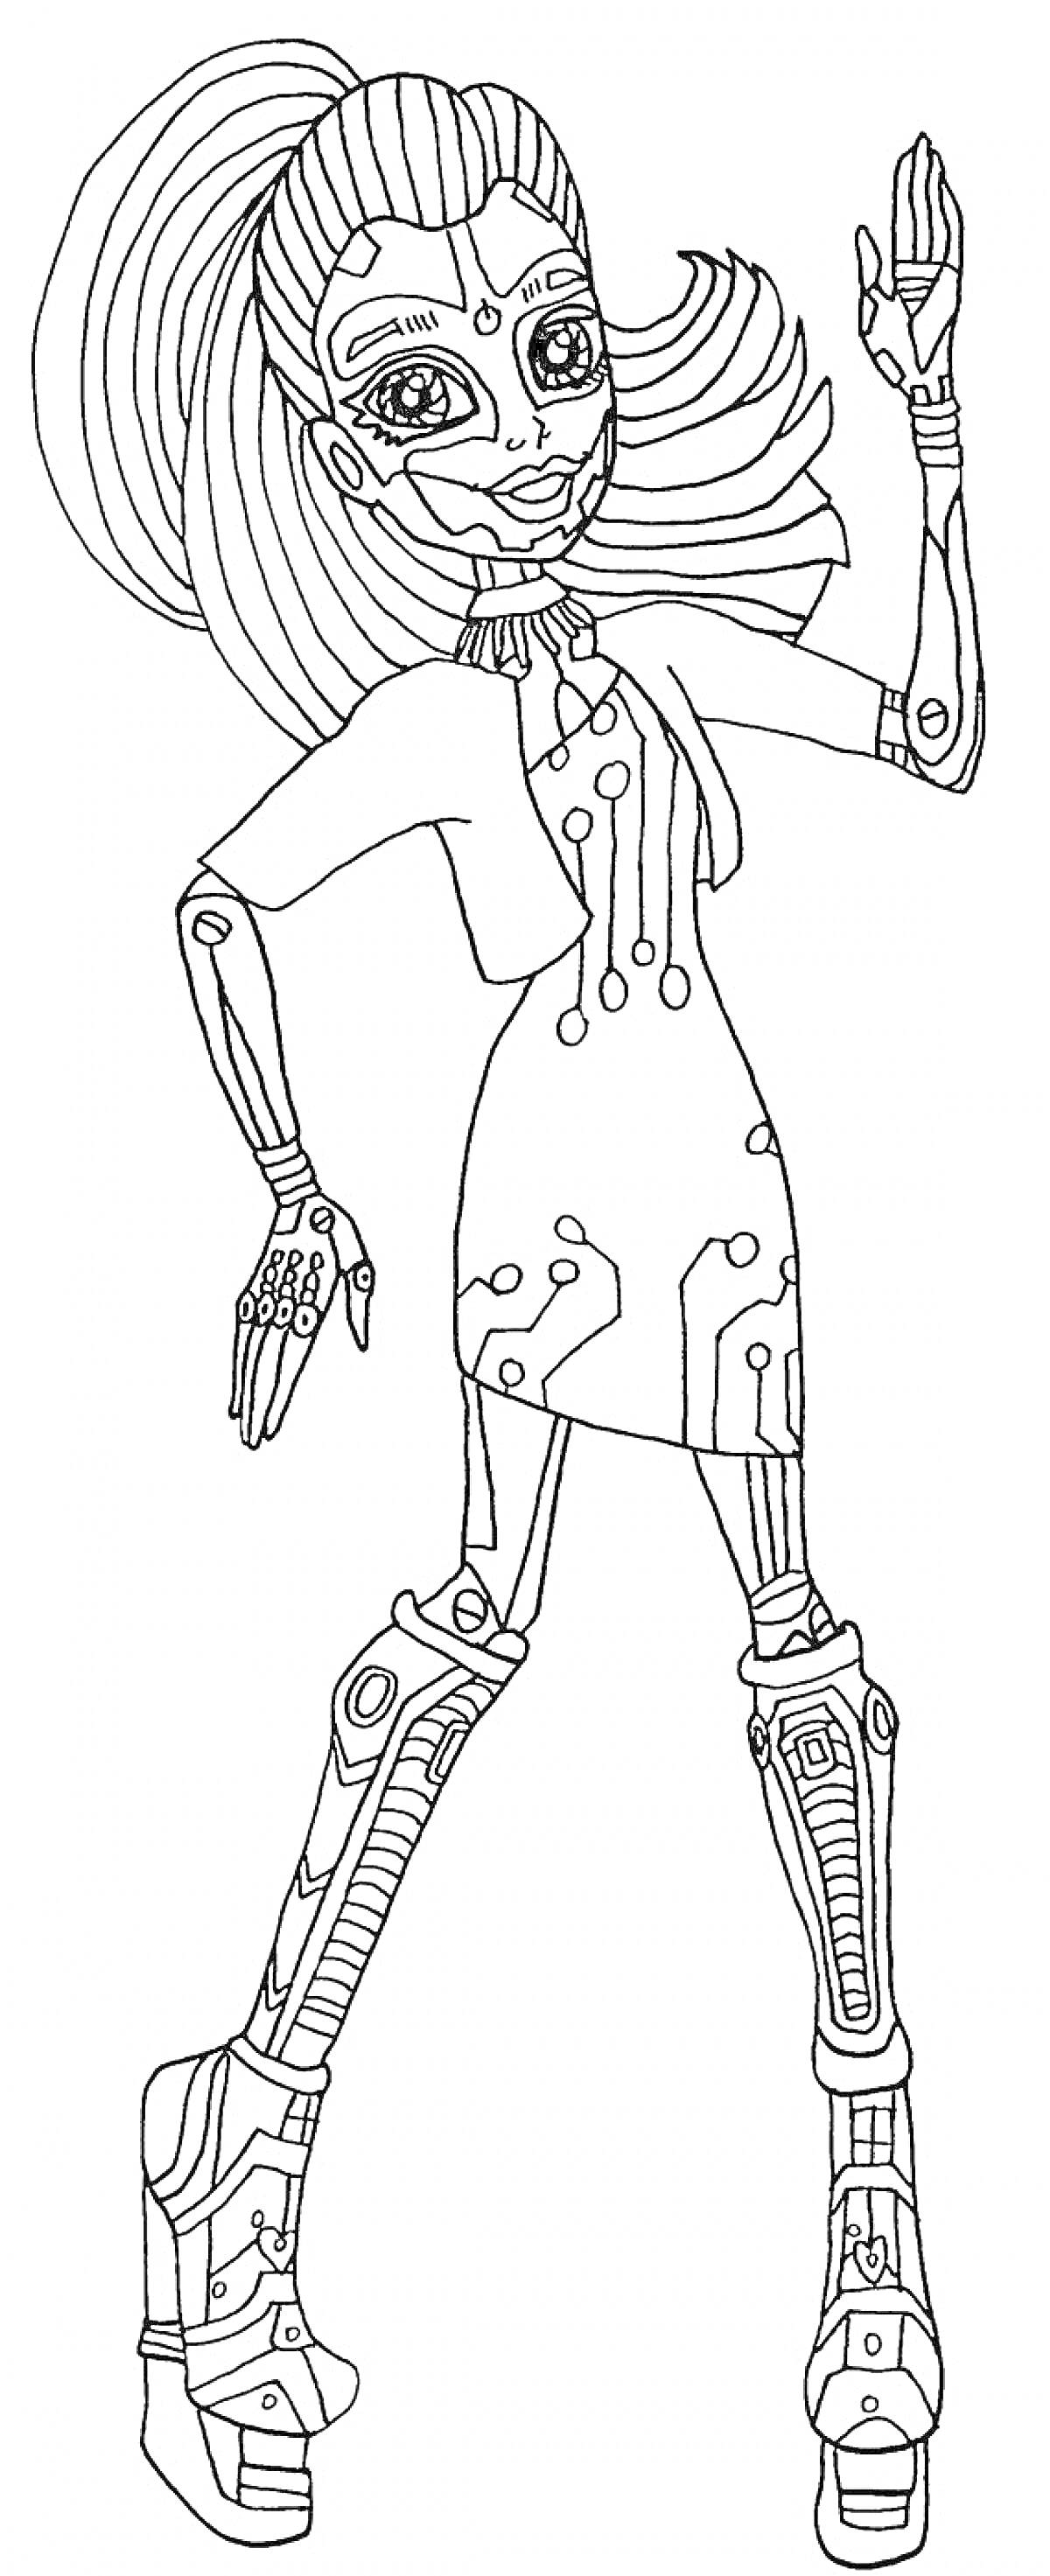 Девушка из Монстр Хай в научно-фантастическом наряде с высоким хвостом, в платье с техно-узорами, на платформенных сапогах с технологическими элементами